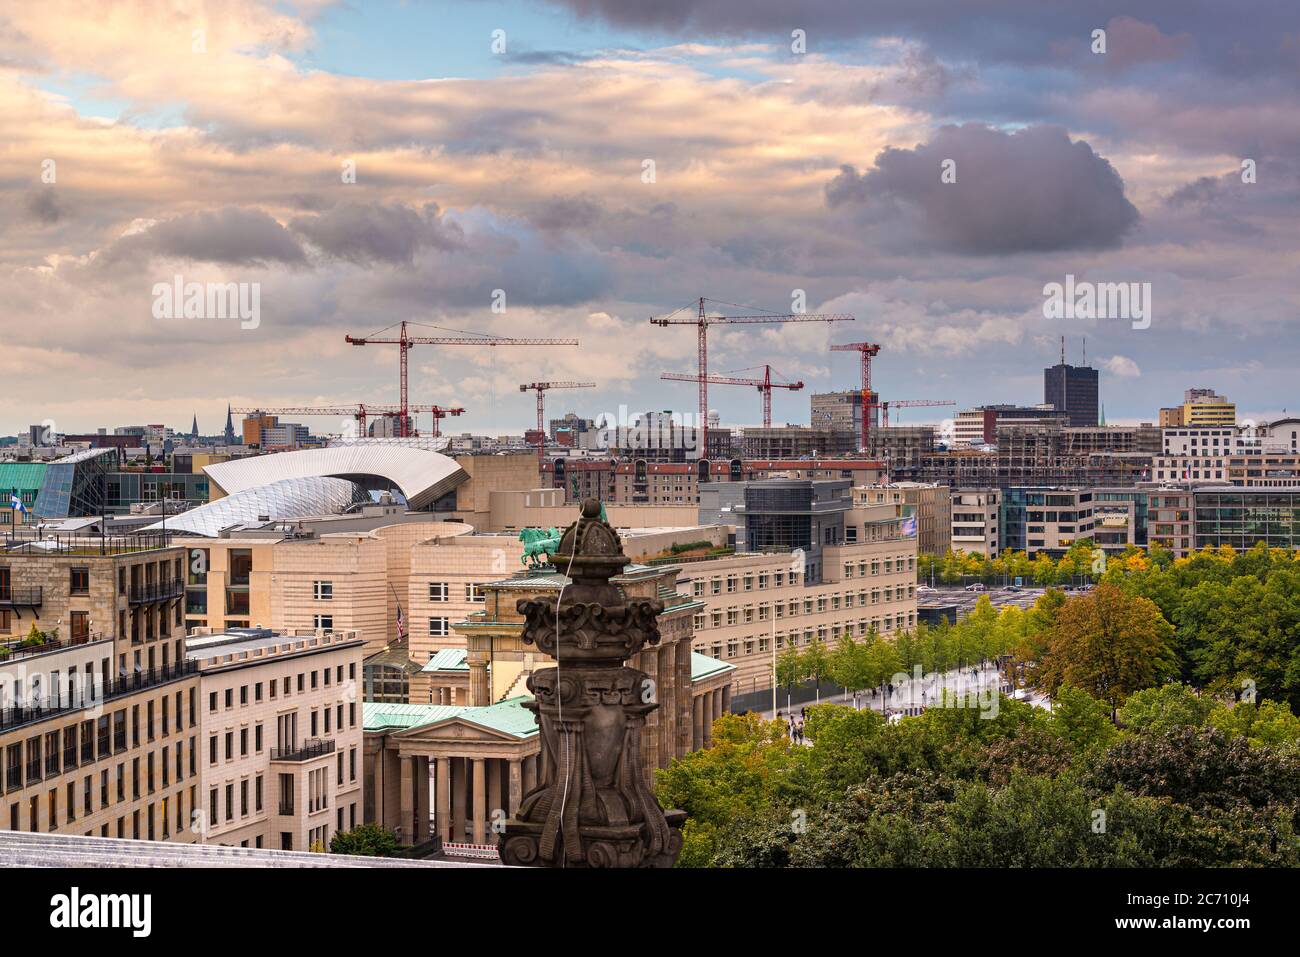 Berlin, Germany cityscape at dusk Stock Photo